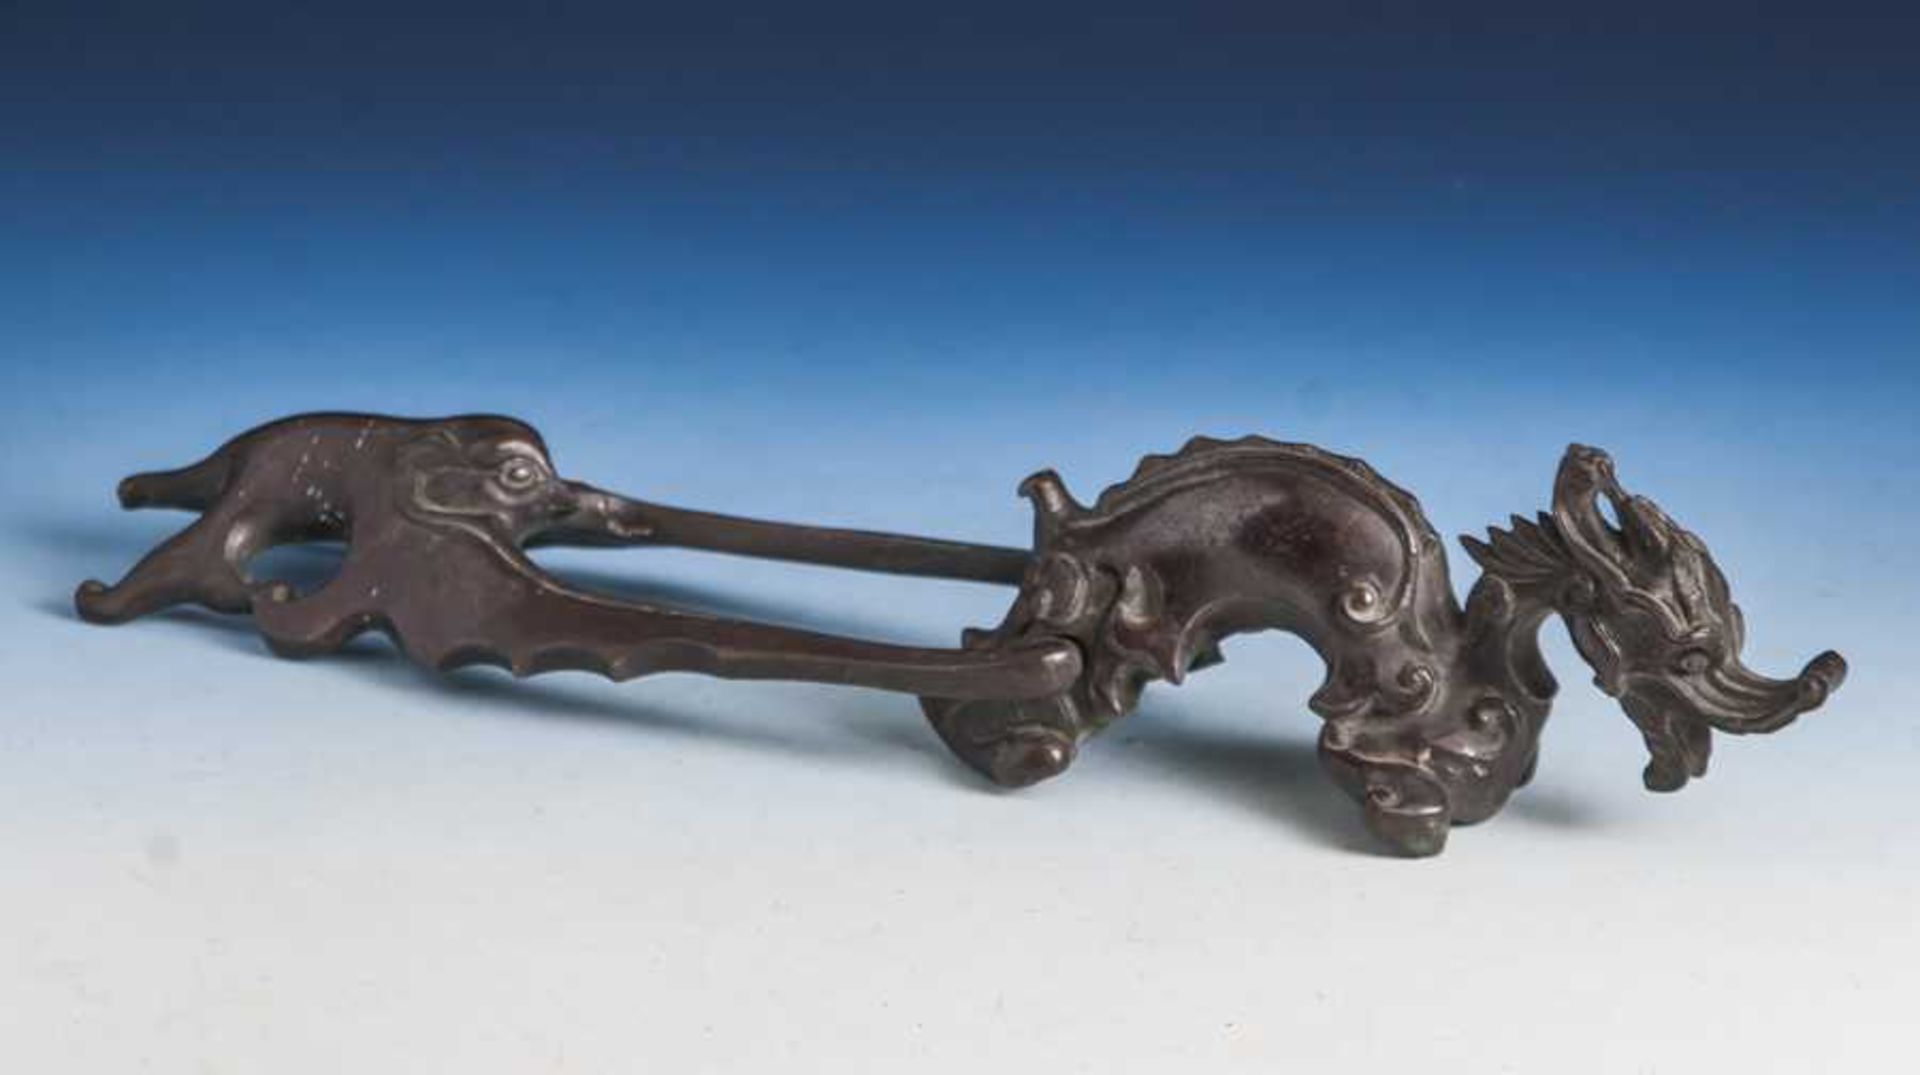 Türklopfer in Form eines Drachen, wohl Historismus, um 1880/90, Bronzeguss, nach chines.Vorbild